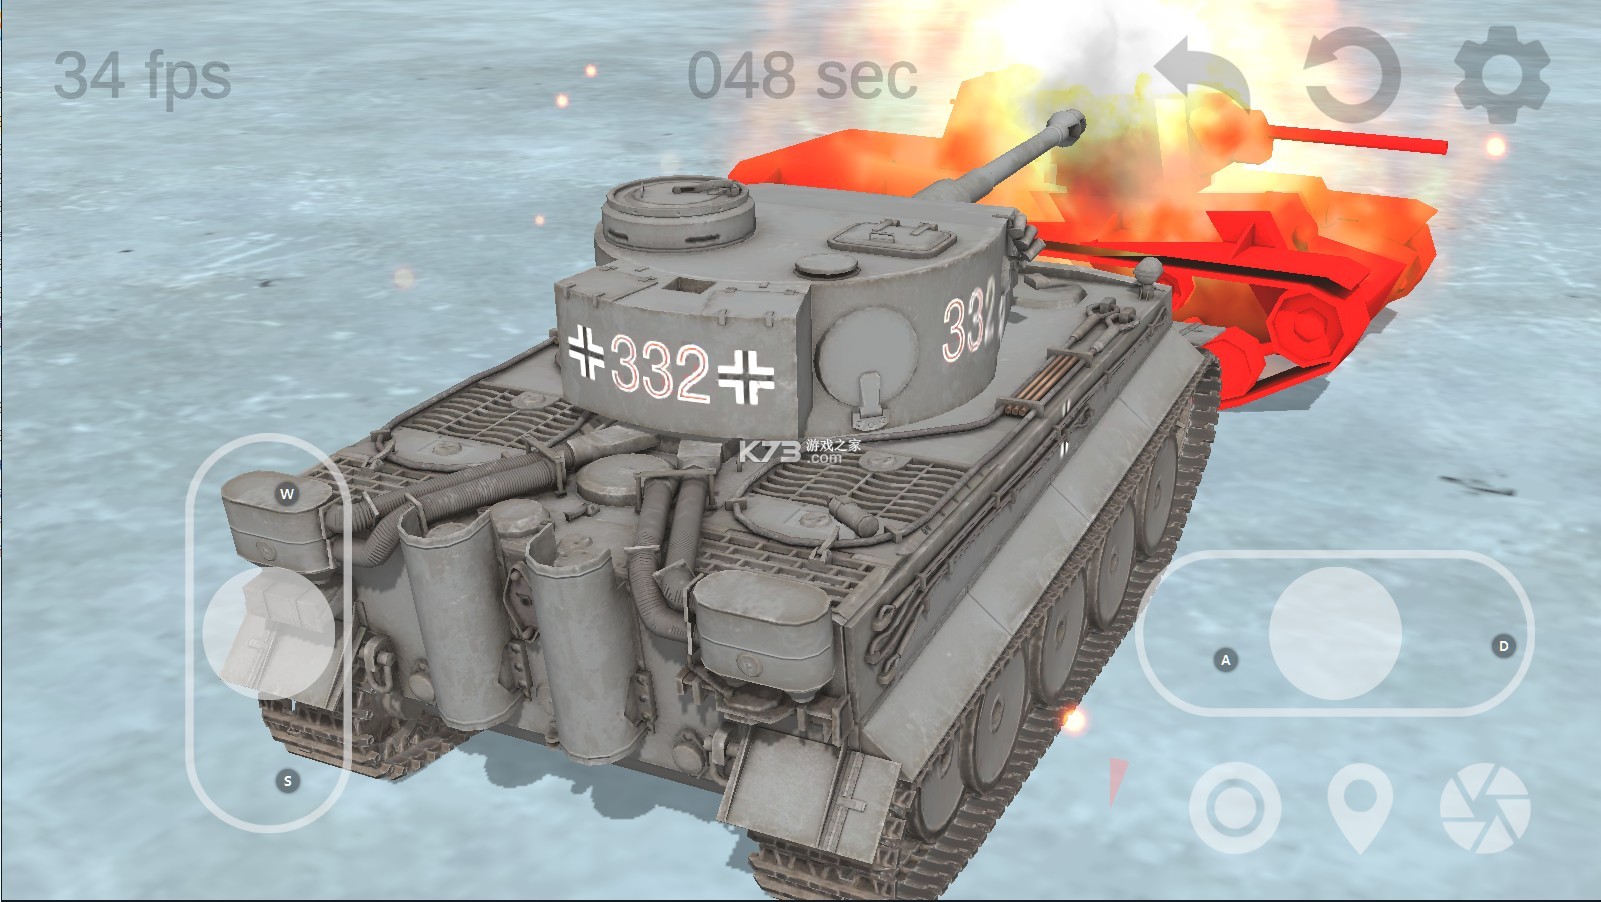 坦克物理模拟器3截图